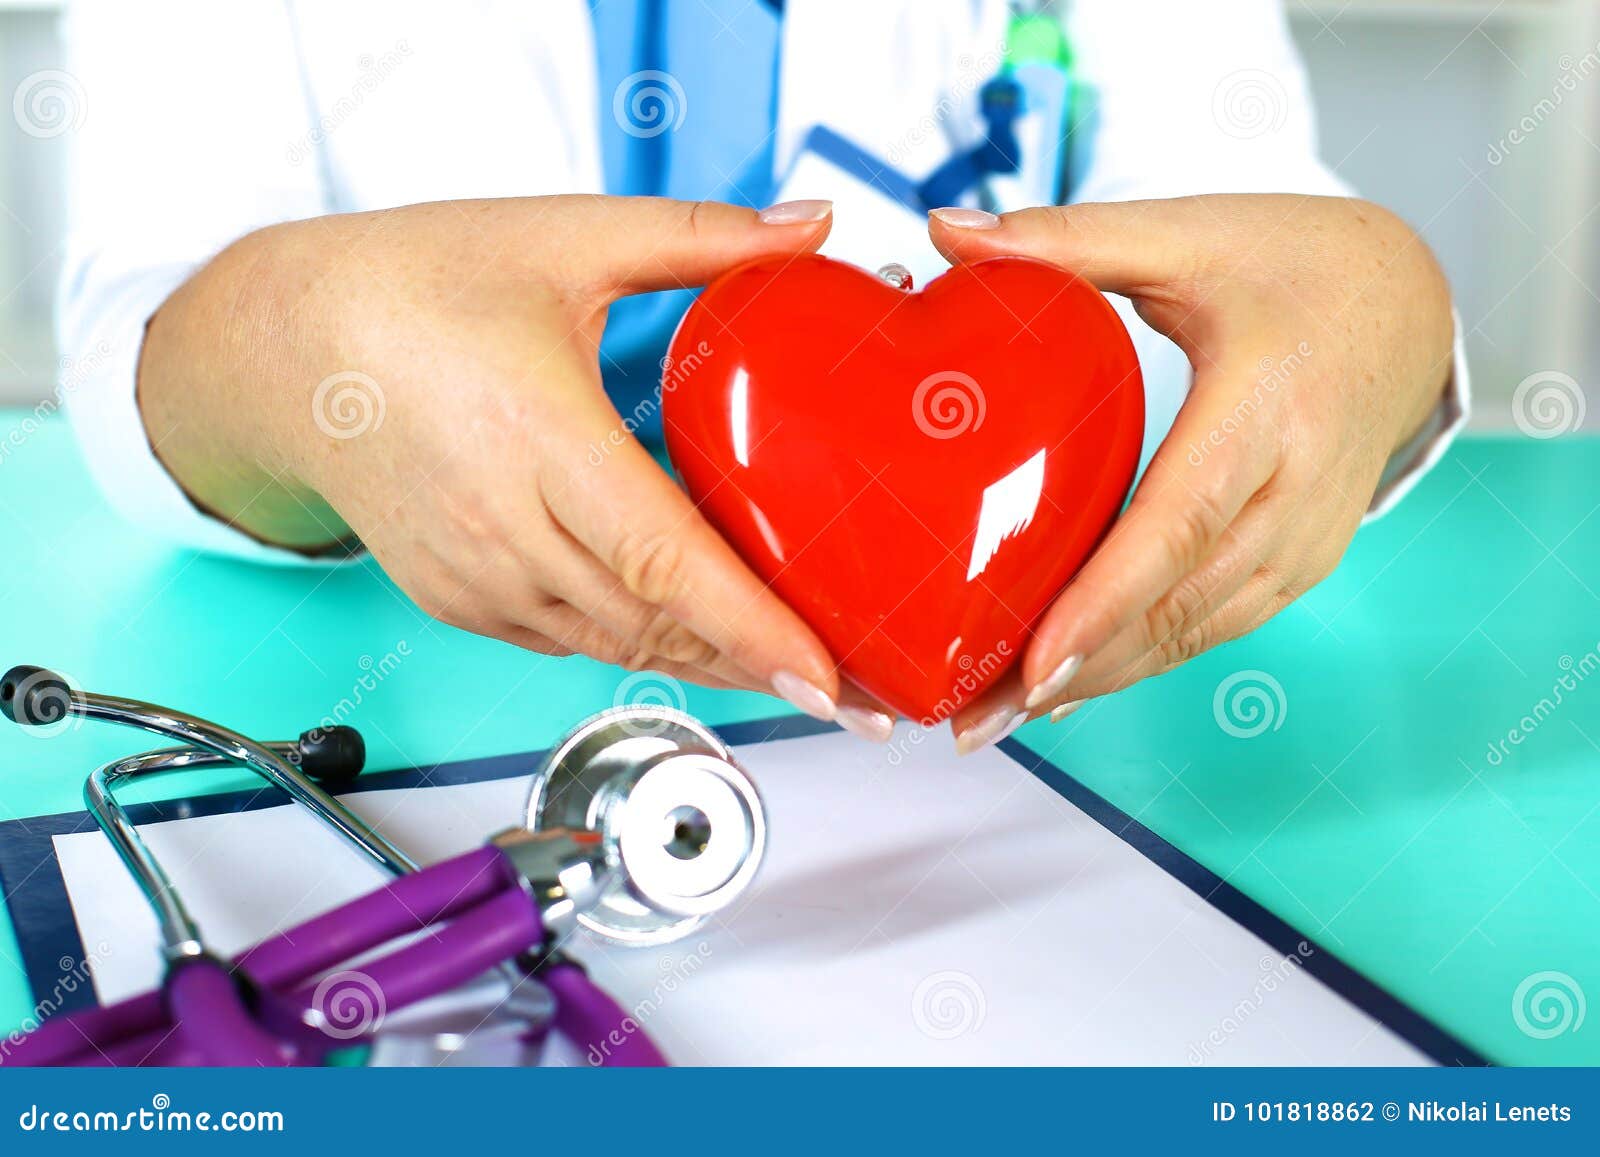 Сердце человека и доктор. Сердце в руках врача. Врач и сердце картинка. Врач с сердцем. Лекция врачем о сердце.